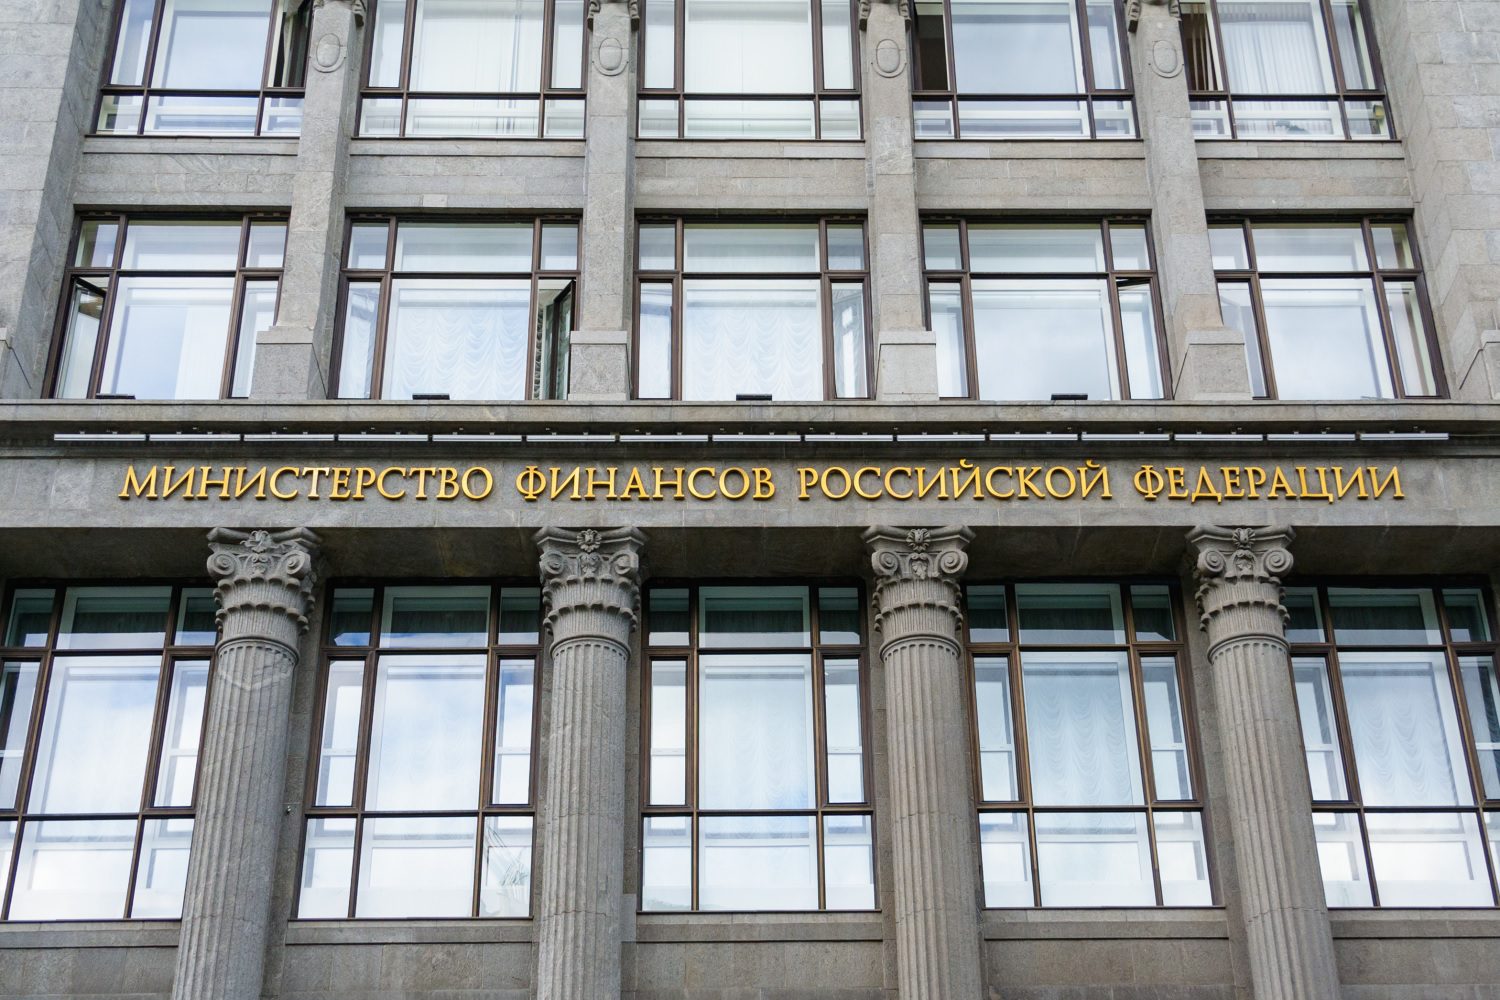 La fachada de la sede del Ministerio de Finanzas de la Federación Rusa, en Moscú, Rusia.